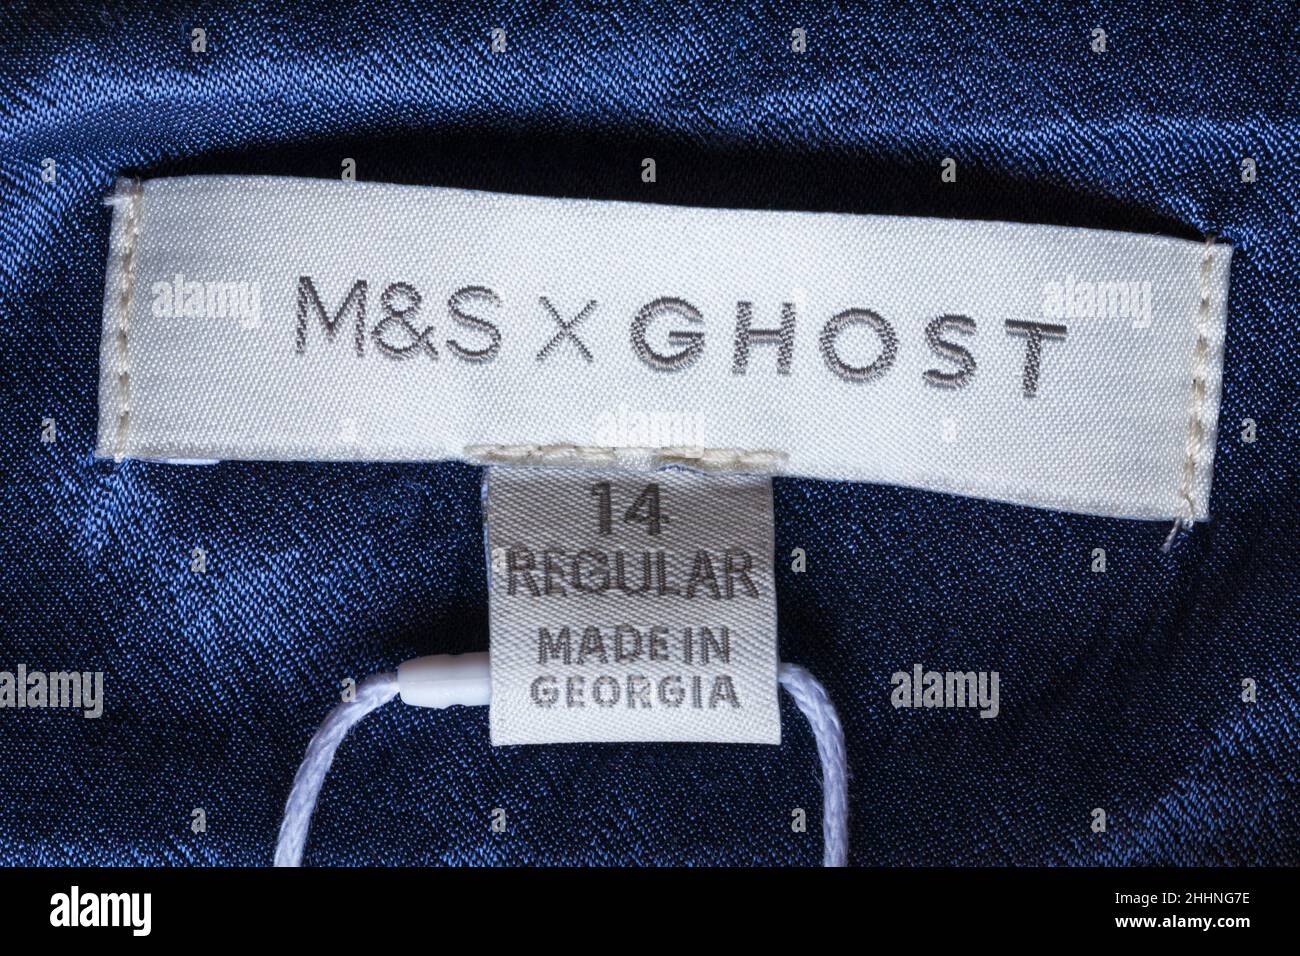 X Ghost Made in Georgia etichetta taglia 14 normali pantaloni M&S - venduti nel Regno Unito Regno Unito, Gran Bretagna Foto Stock